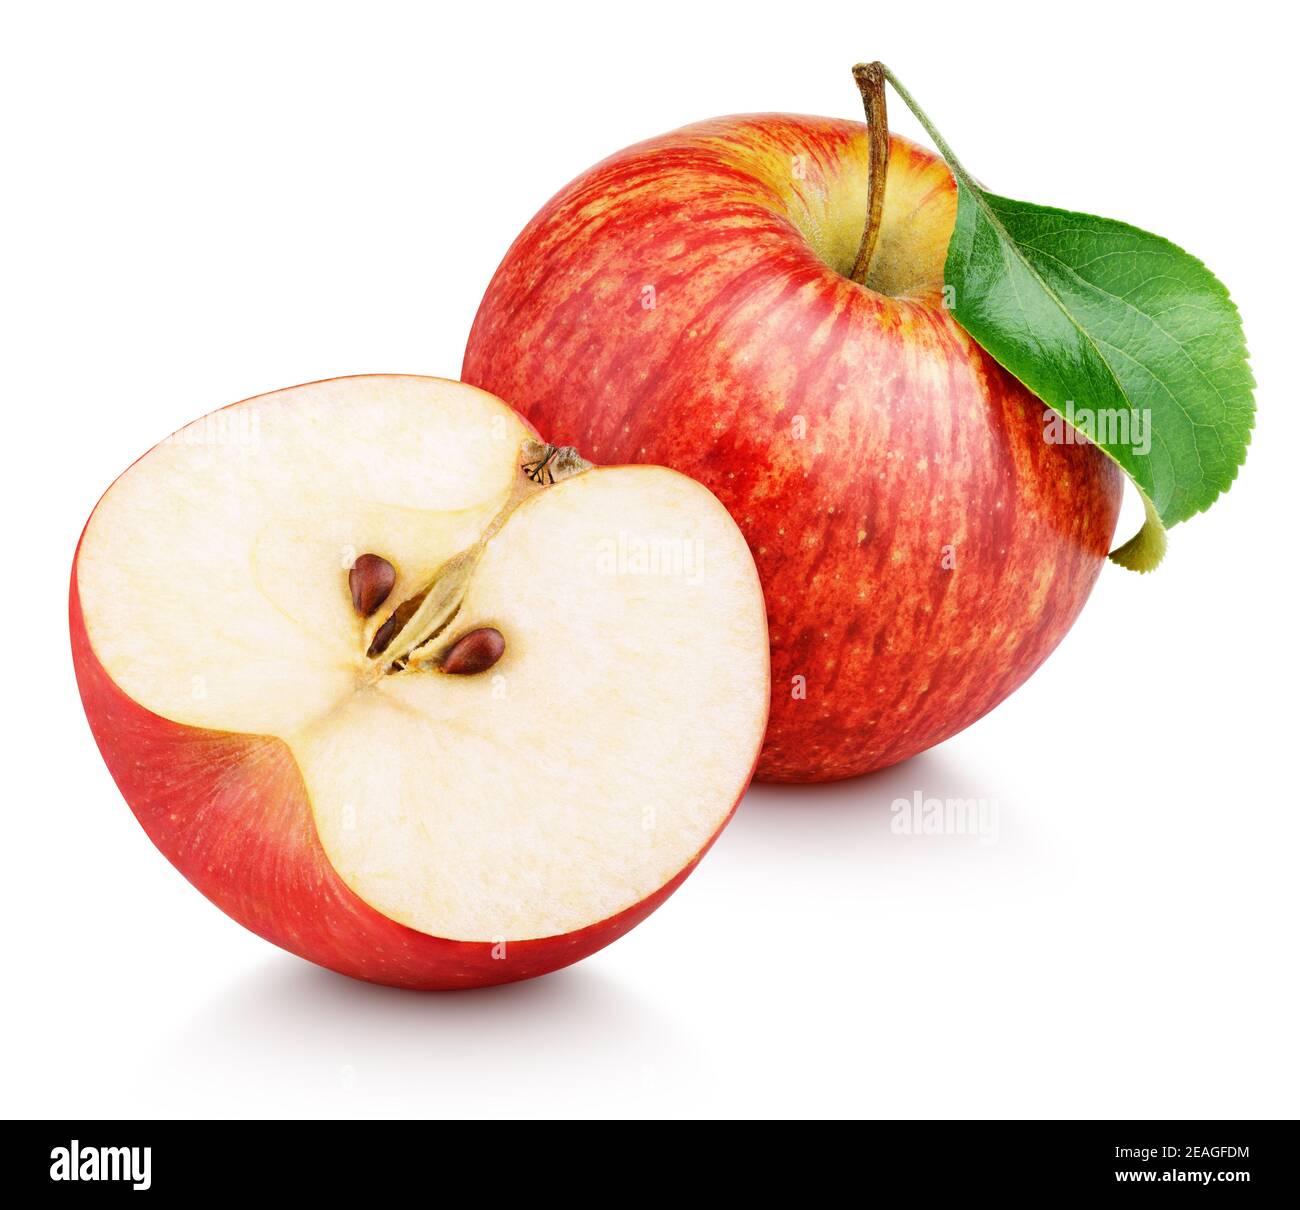 Mela rossa matura con mezzo di mela e foglia verde isolata su sfondo bianco. Mele e foglie con percorso di ritaglio Foto Stock